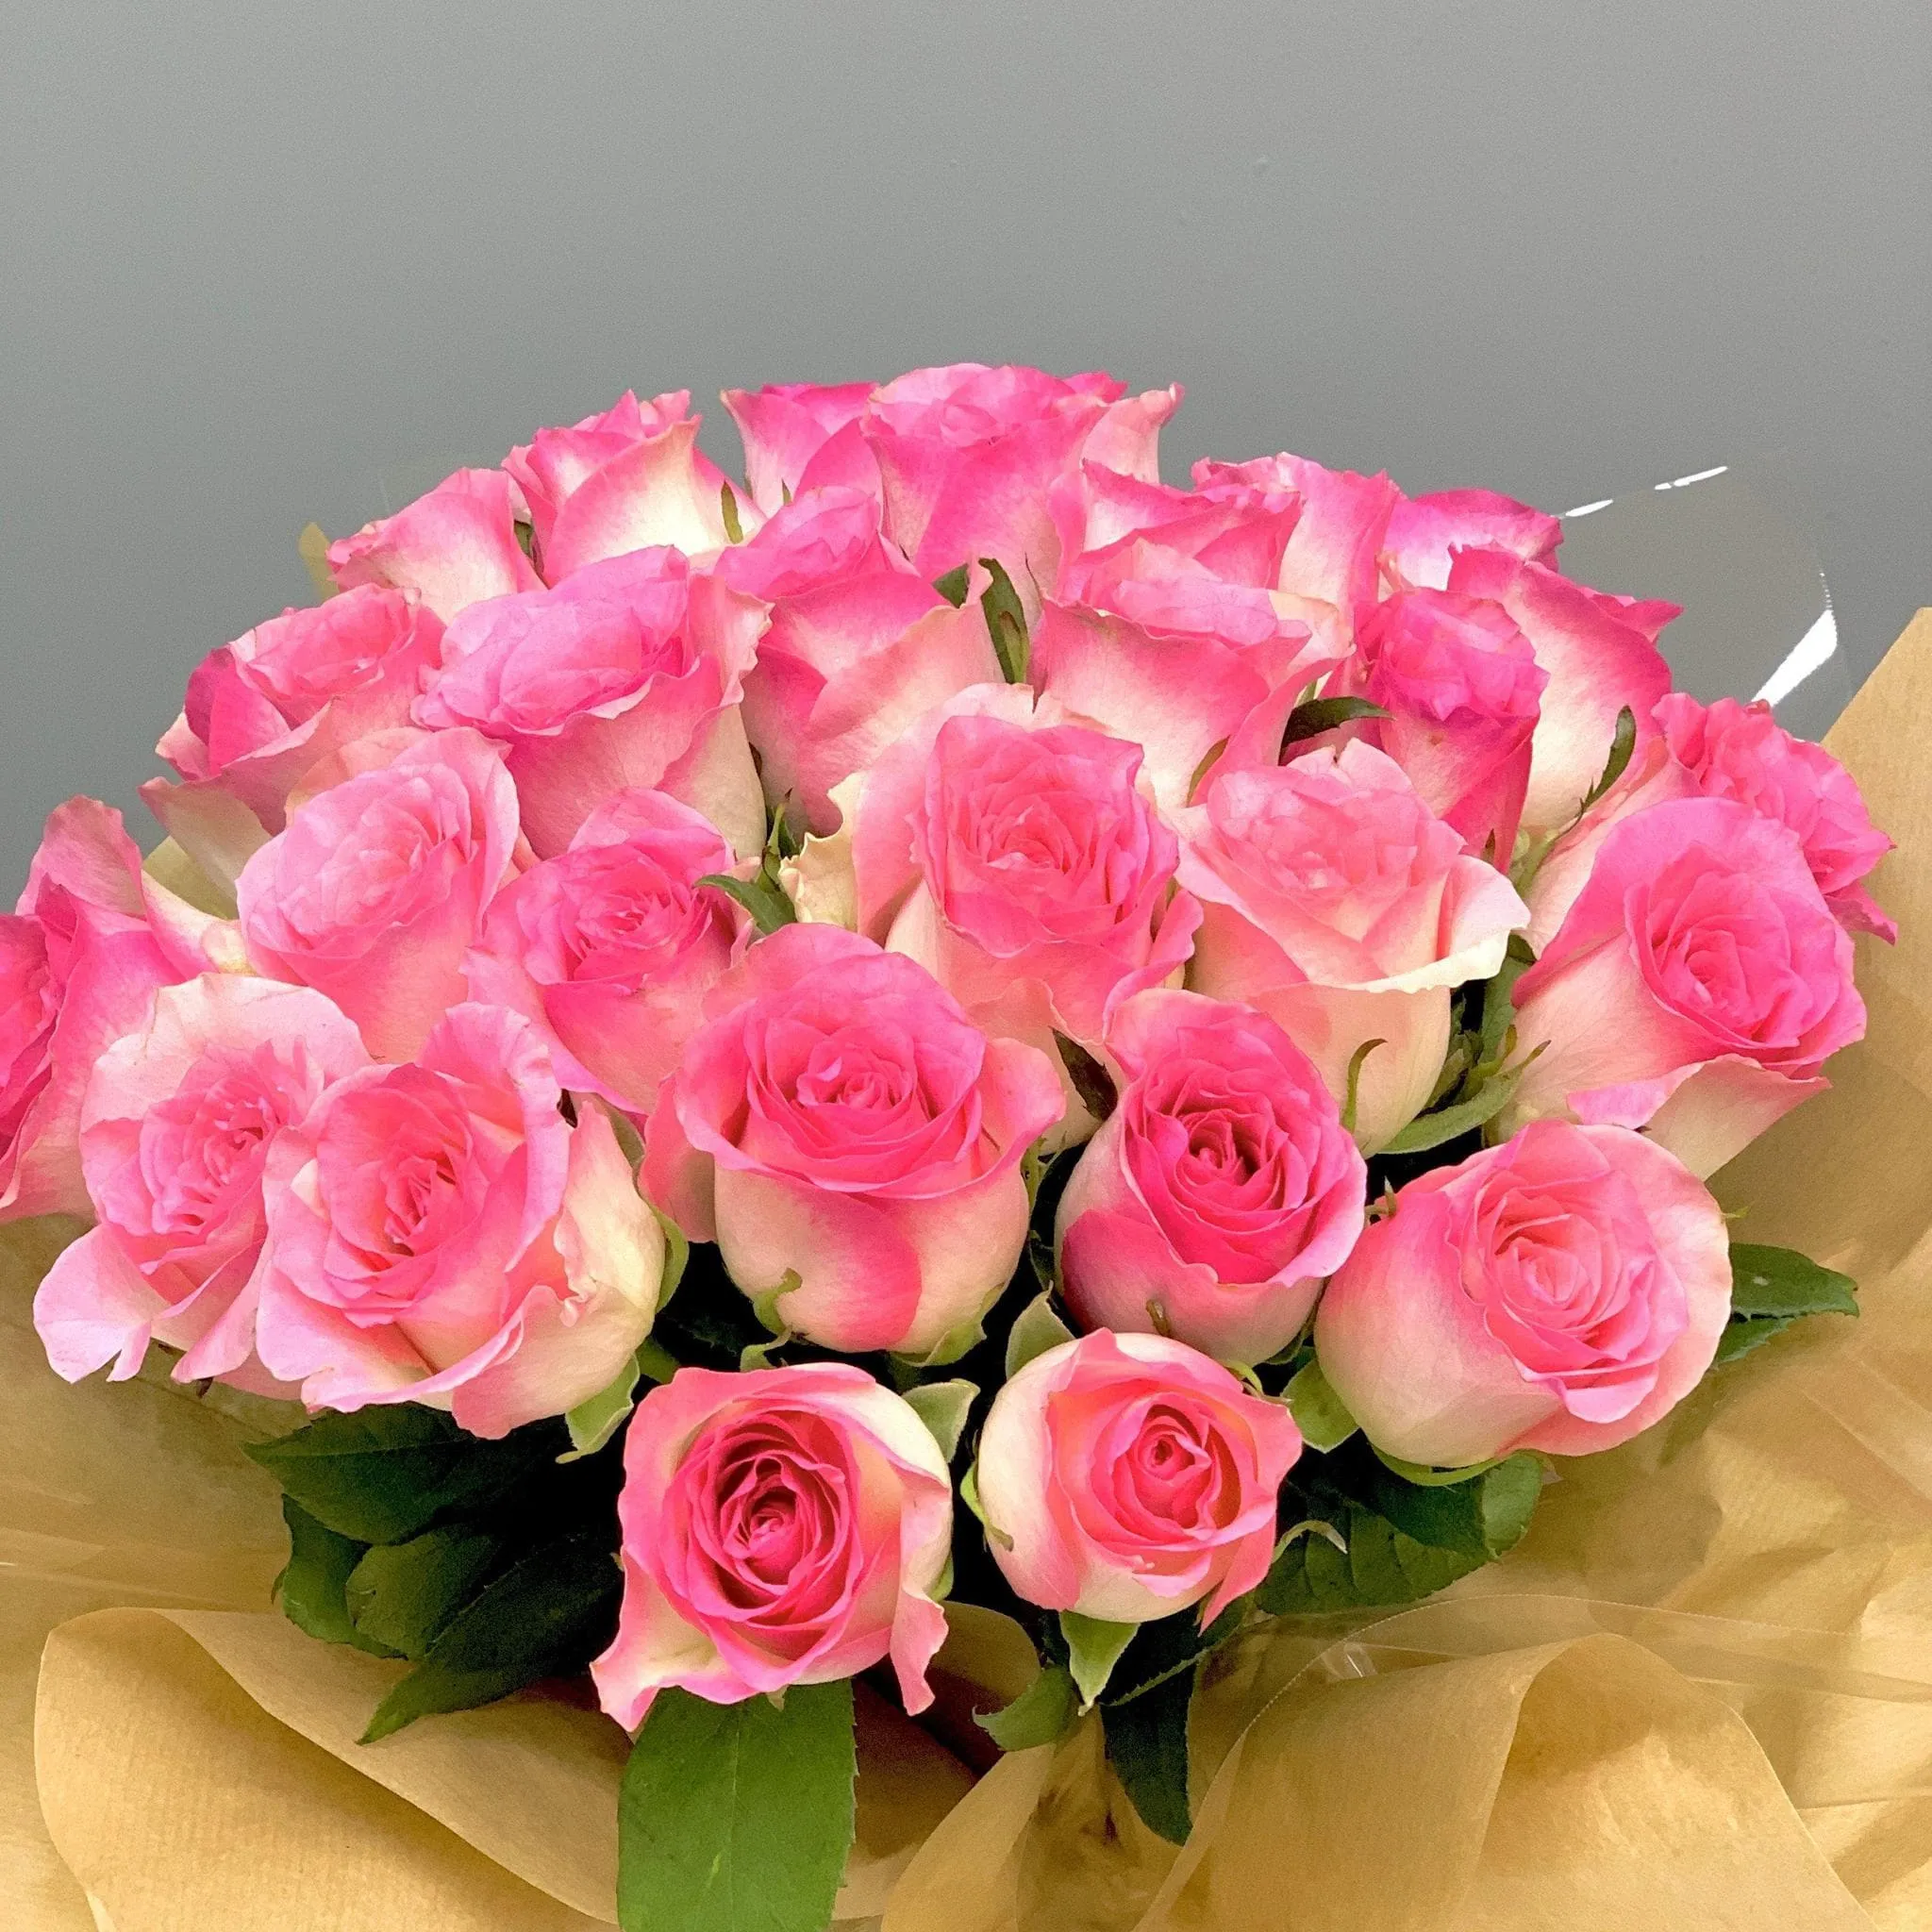 Купить Орхидеи и розы в коробке R646 в Москве, цена 11 350 руб.